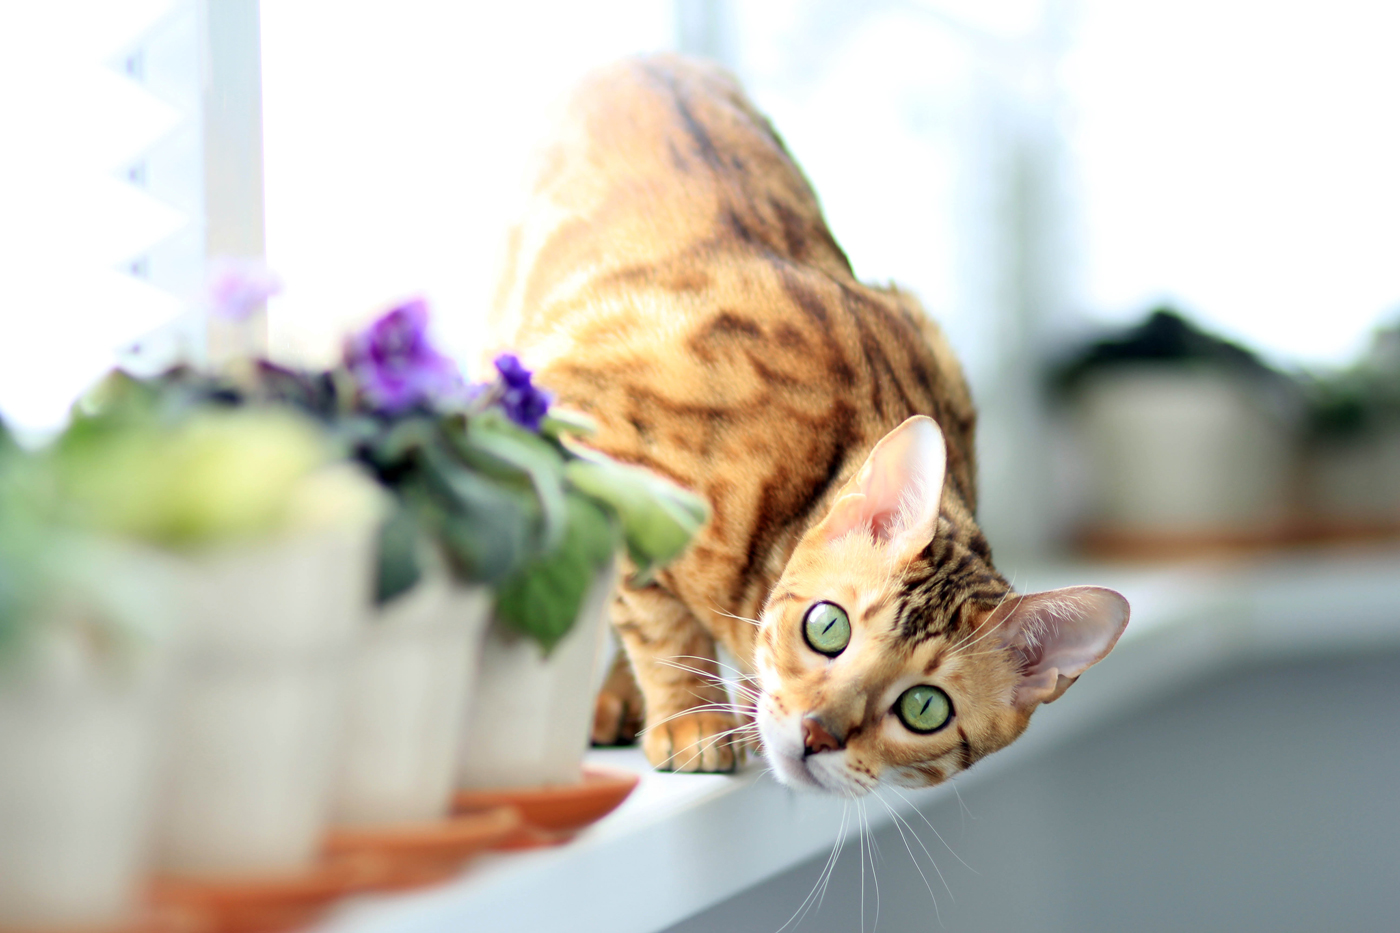 A Bengal cat inspecting a flower pot on a windowsill